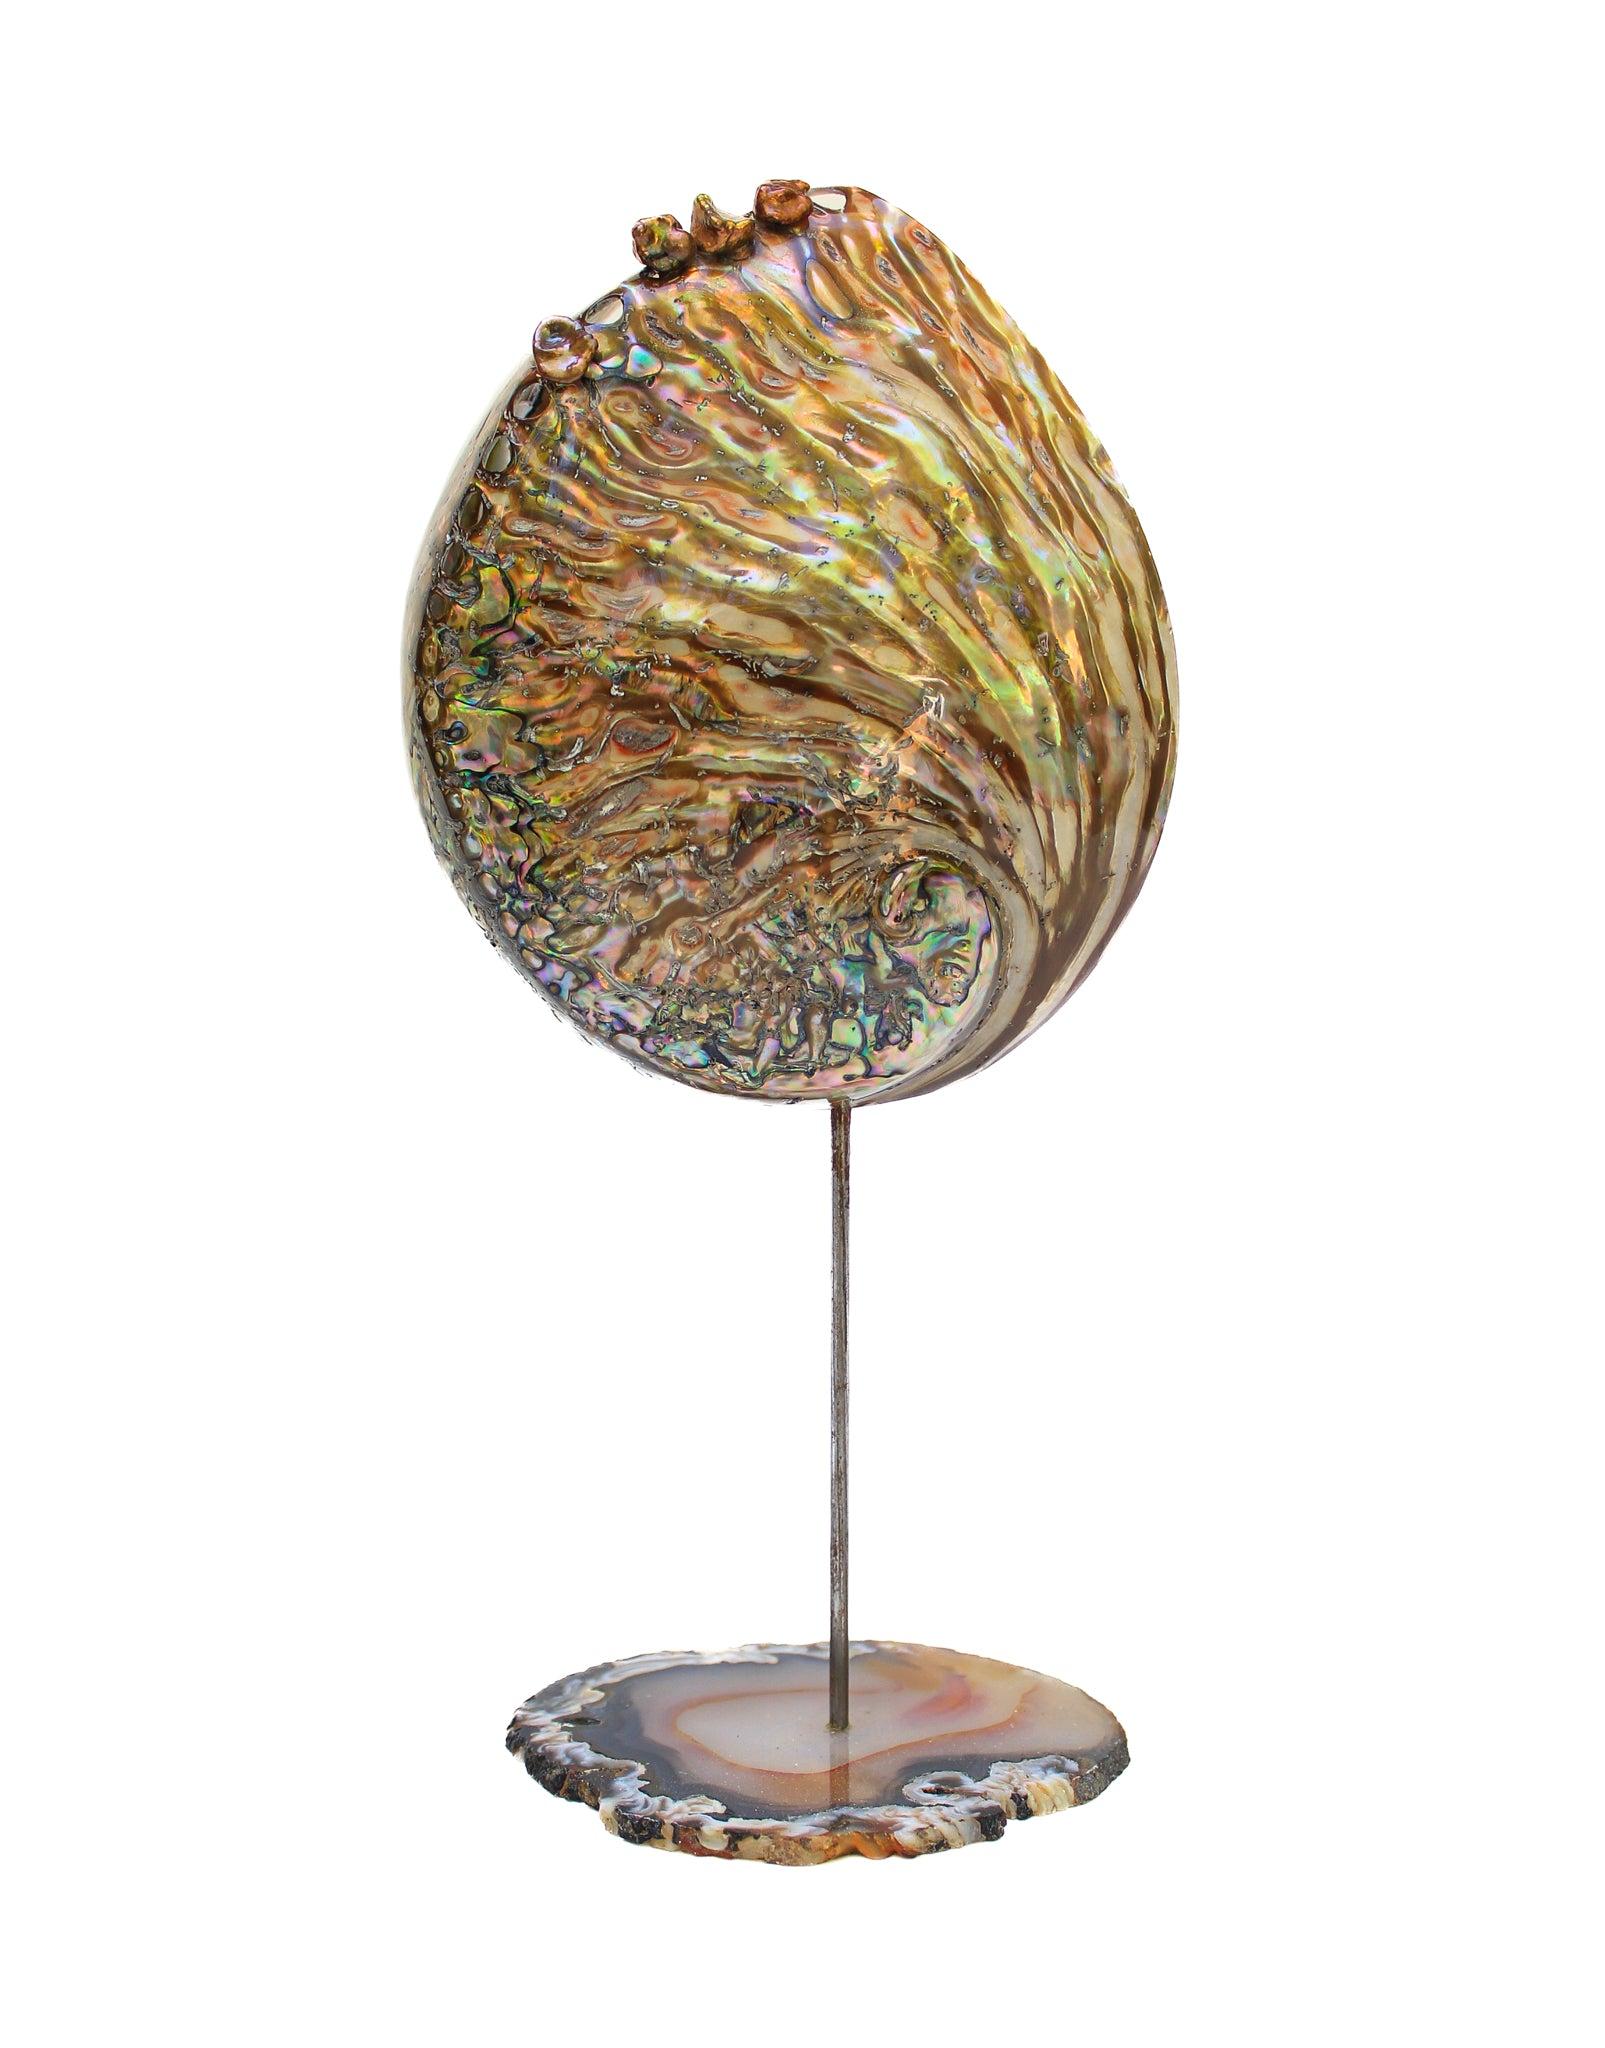 Polierte Abalone-Muschel (Haliotis Iris) mit natürlich geformten Barockperlen, montiert auf einem Metallstab auf einem polierten Achatsockel. Die schillernde, mehrfarbige Muschel harmoniert perfekt mit den Barockperlen und der polierten